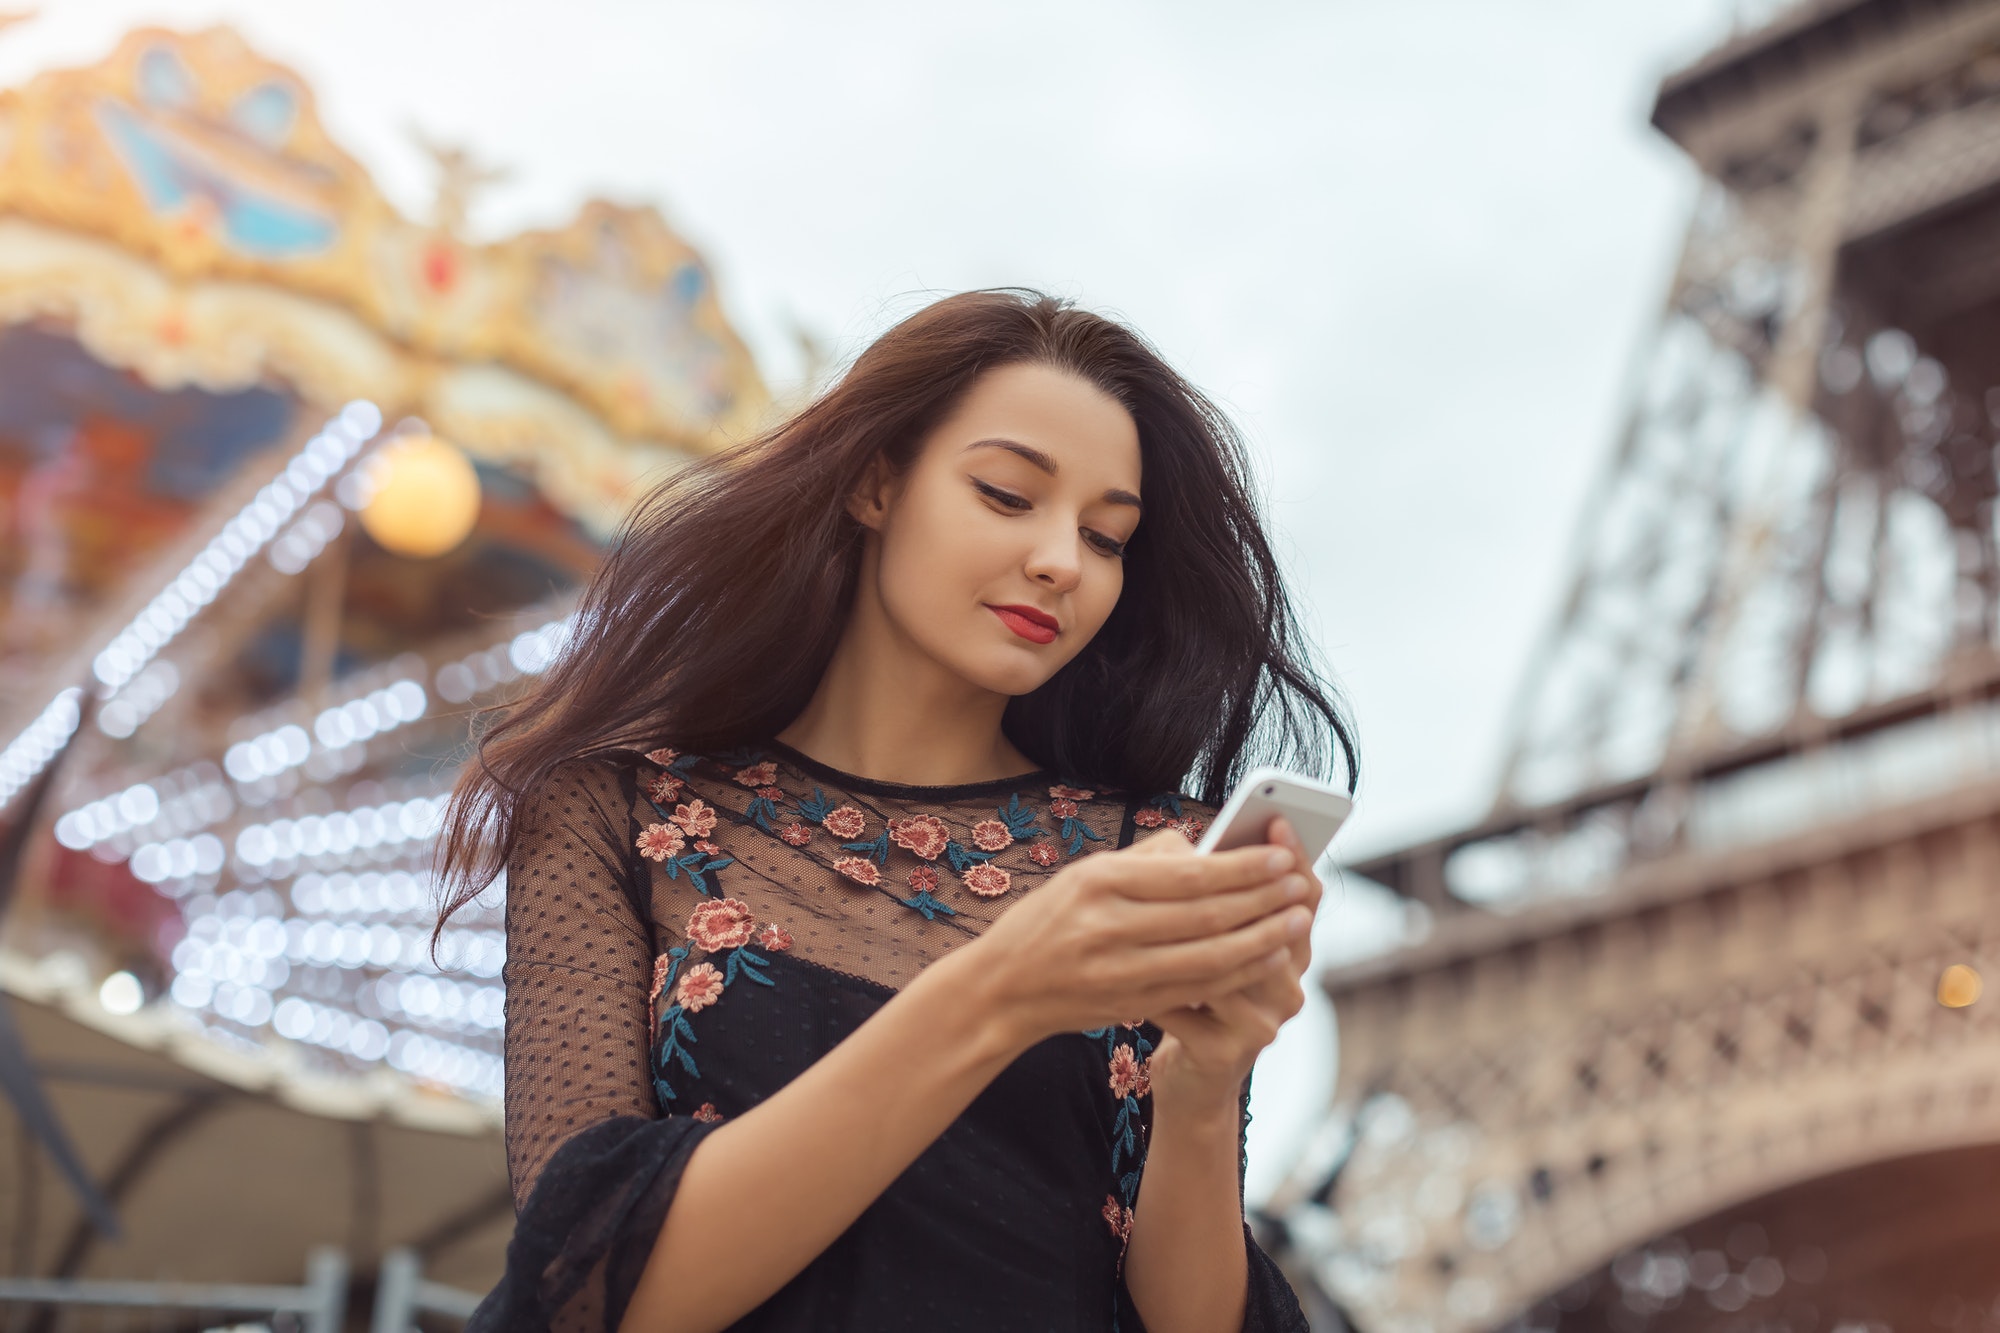 Femme en voyage utilisant un smartphone près de la Tour Eiffel et du carrousel, Paris